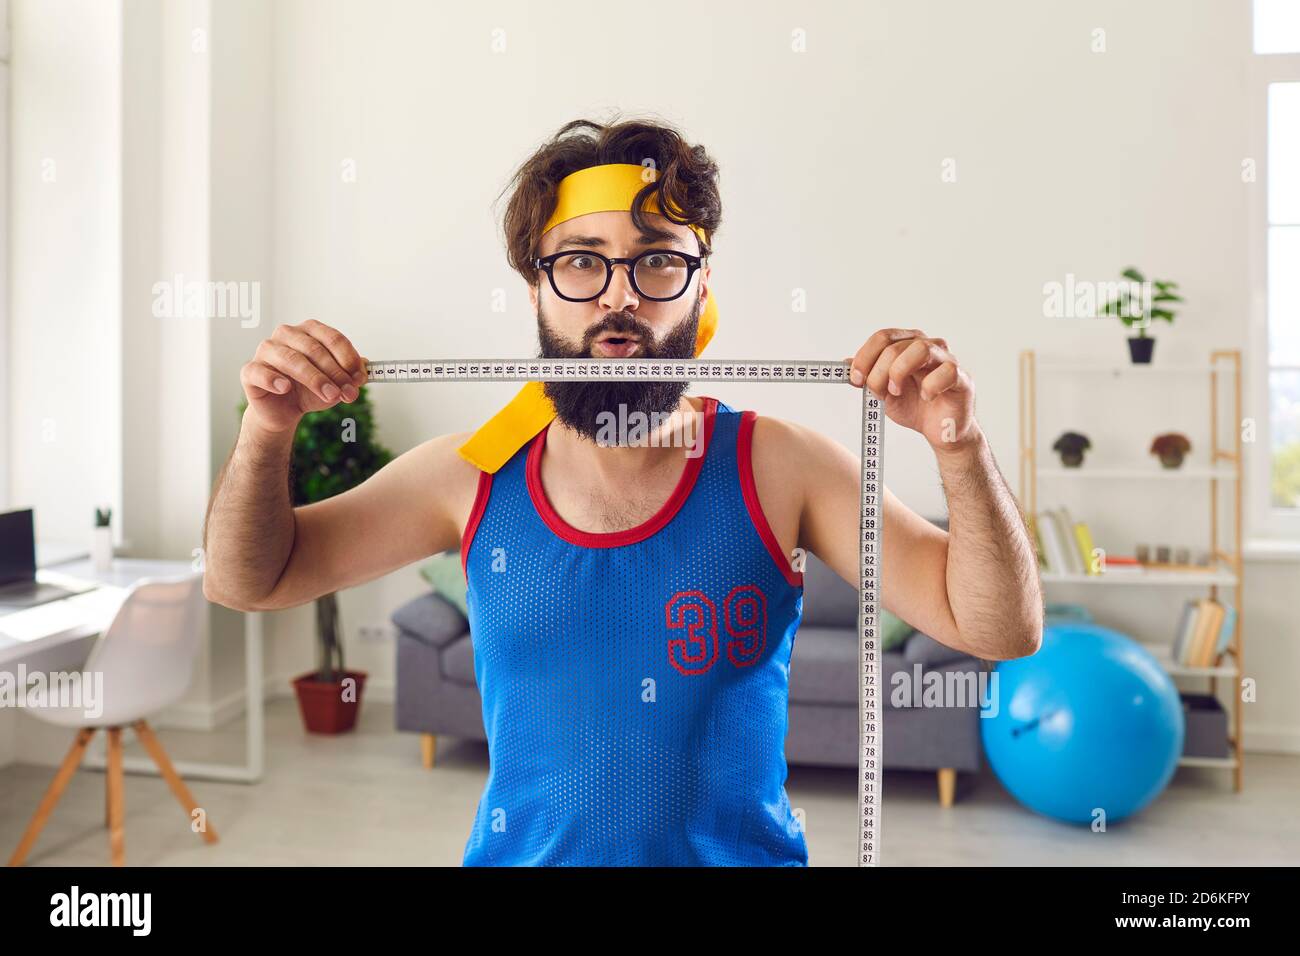 Lustige junge Mann hält Maßband und demonstriert erstaunliche Gewicht  Schadenergebnis Stockfotografie - Alamy